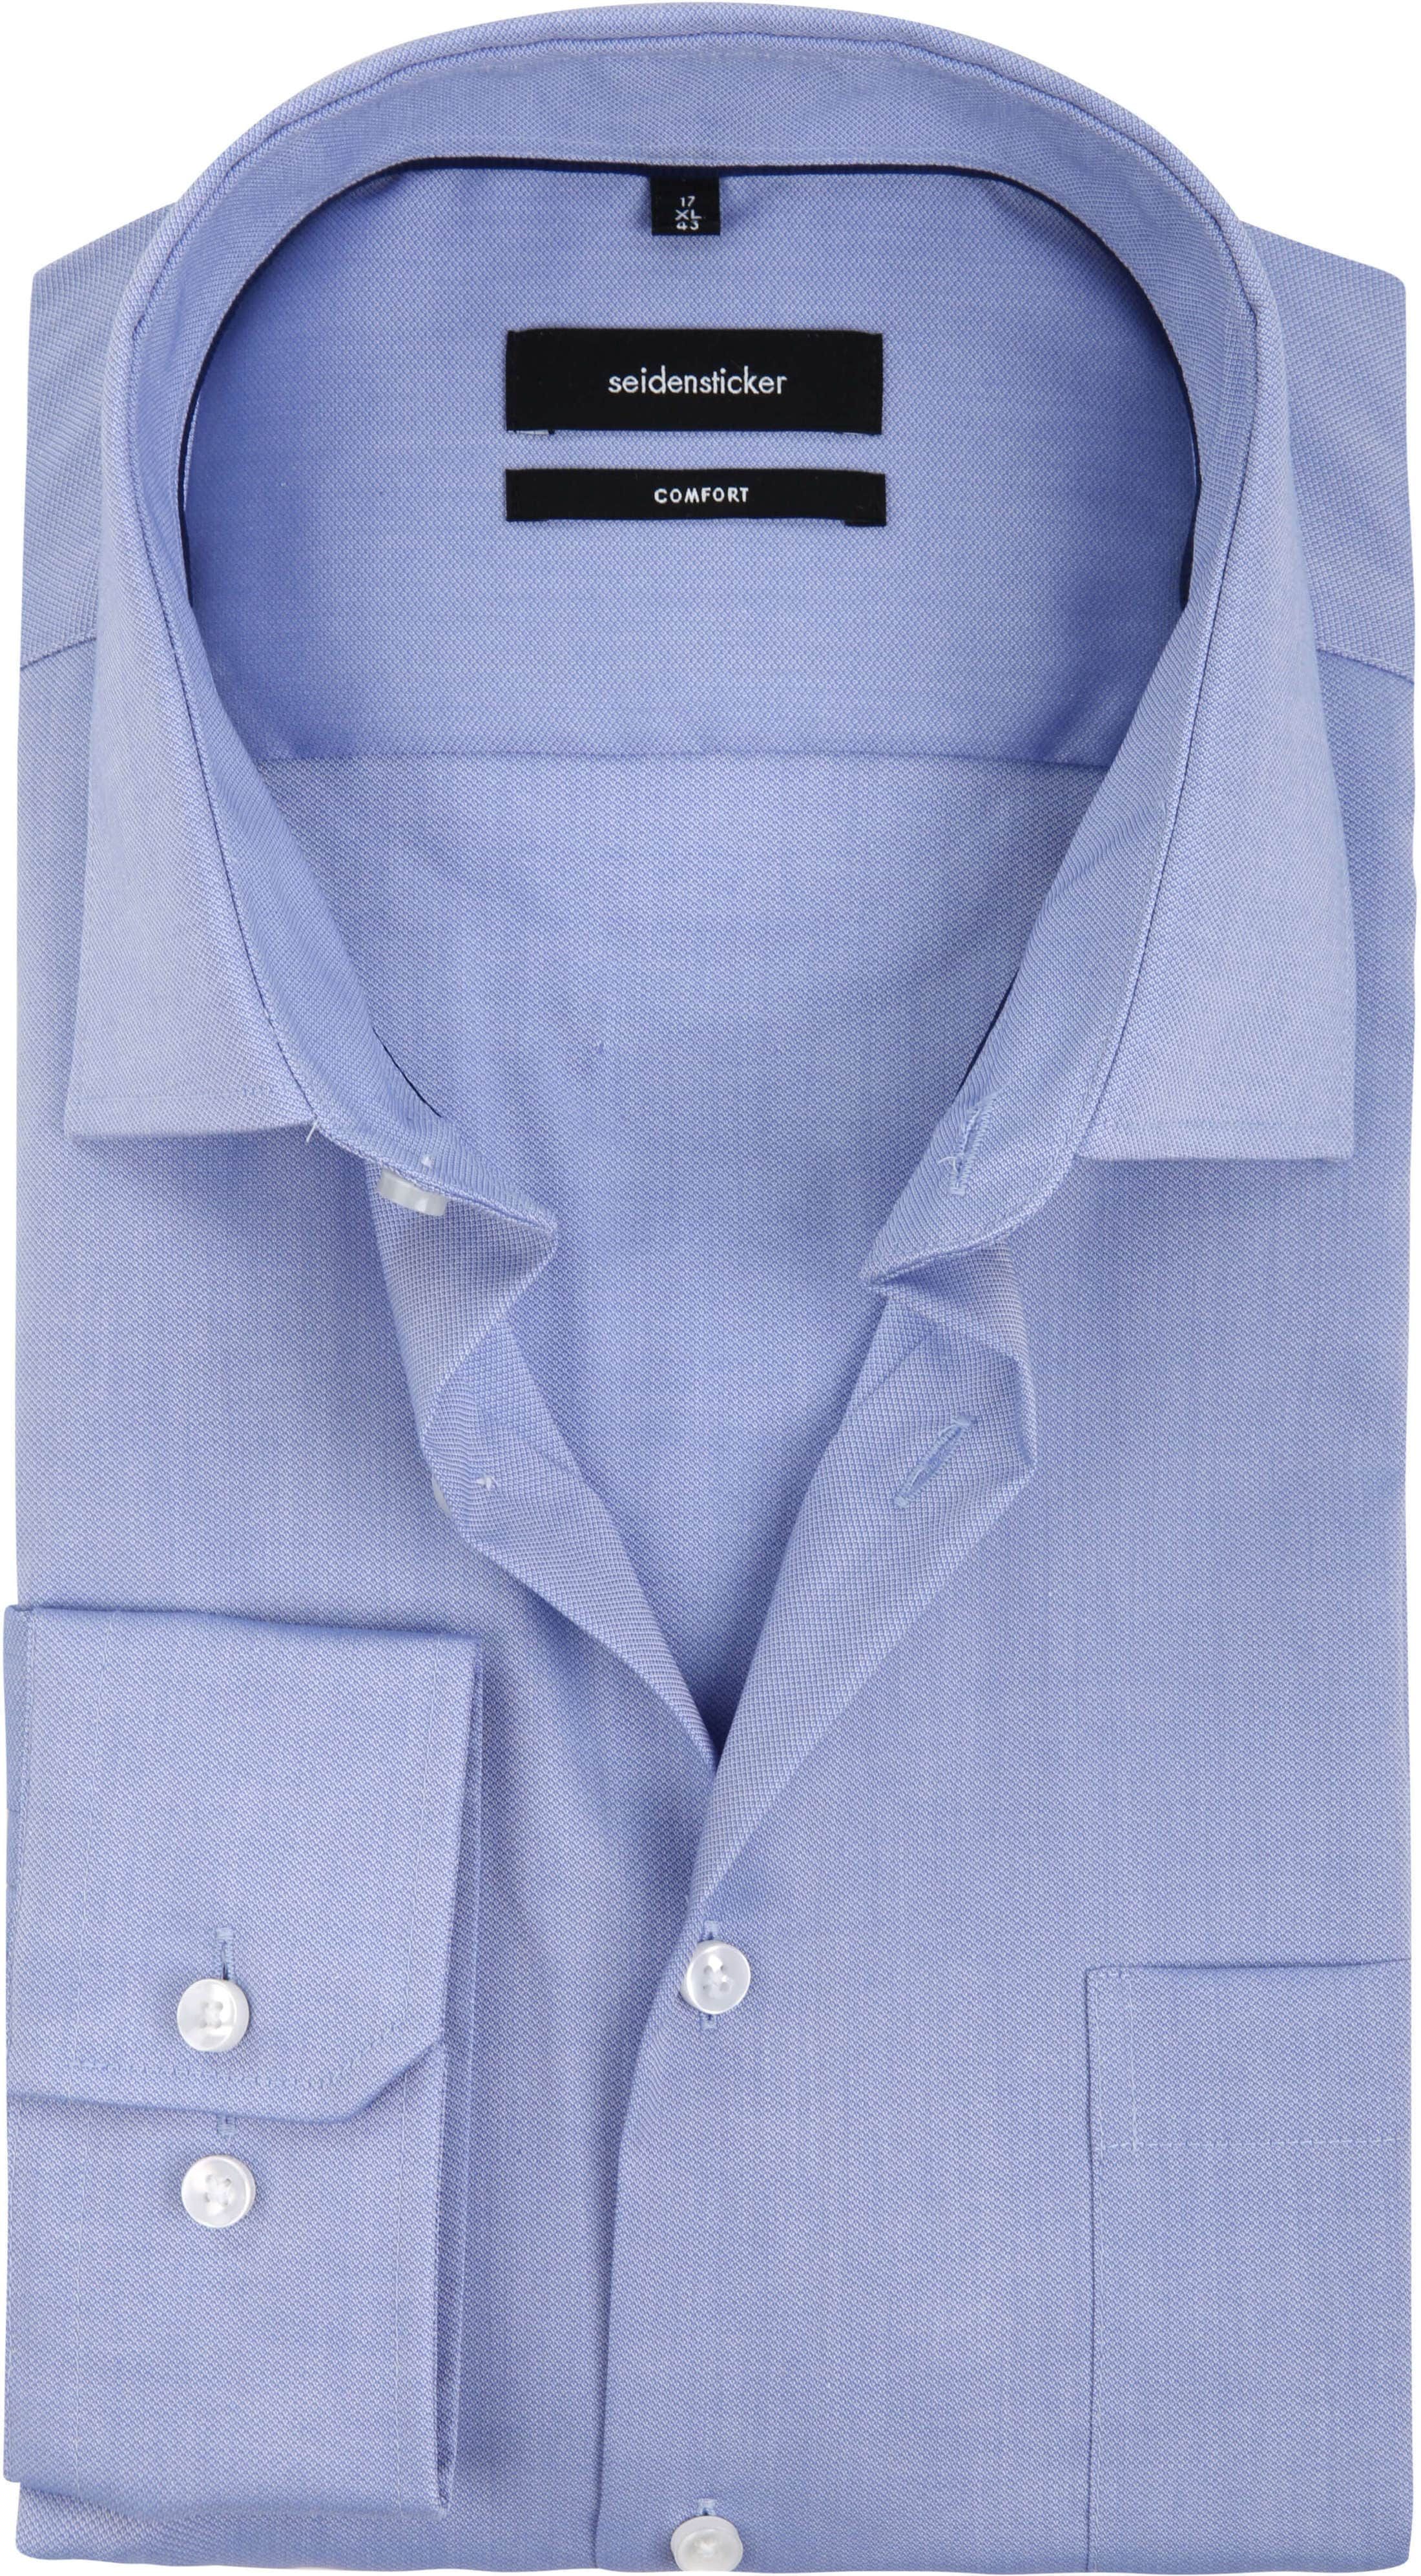 Seidensticker Shirt Comfort Fit Blue size 21 1/4